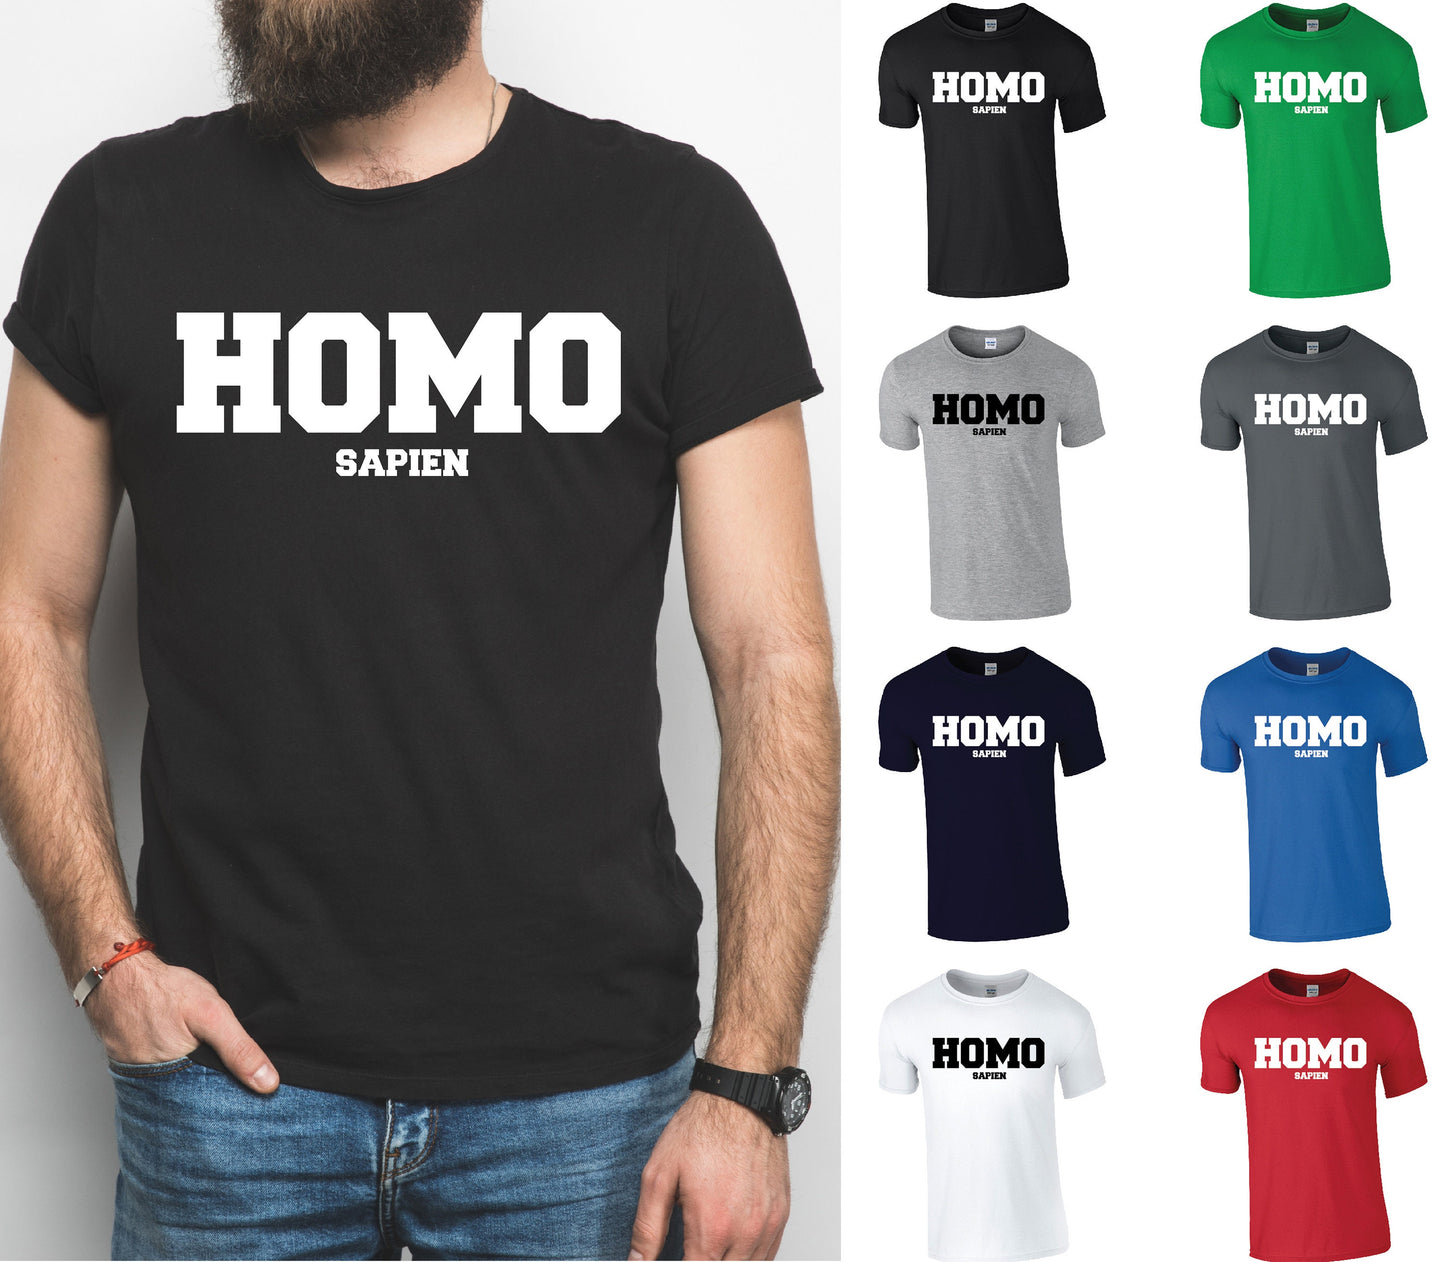 HOMO sapien T-Shirt - Cool Funny LGBTQ+ Slogan Pride Tee